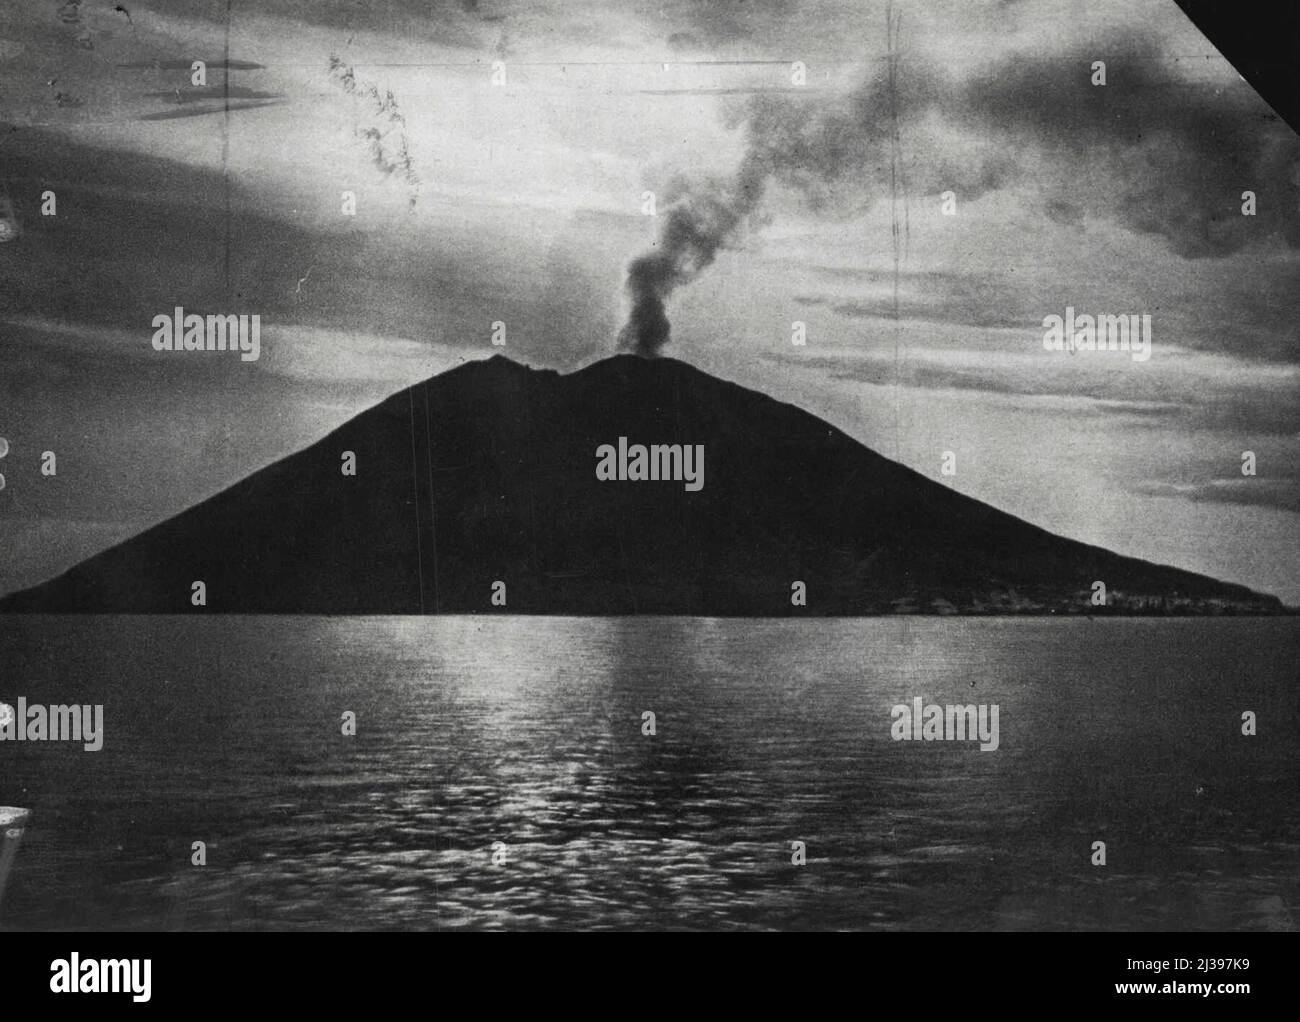 Insel Vulkan In ***** -- Stromboli, die vulkanische Insel vor Sizilien, in der ***** Es hat eine enorme Explosion gegeben. Seit 2.000 Jahren ist es praktisch fortwährend in Eruption. 25. Februar 1928. (Foto von Central News). Stockfoto